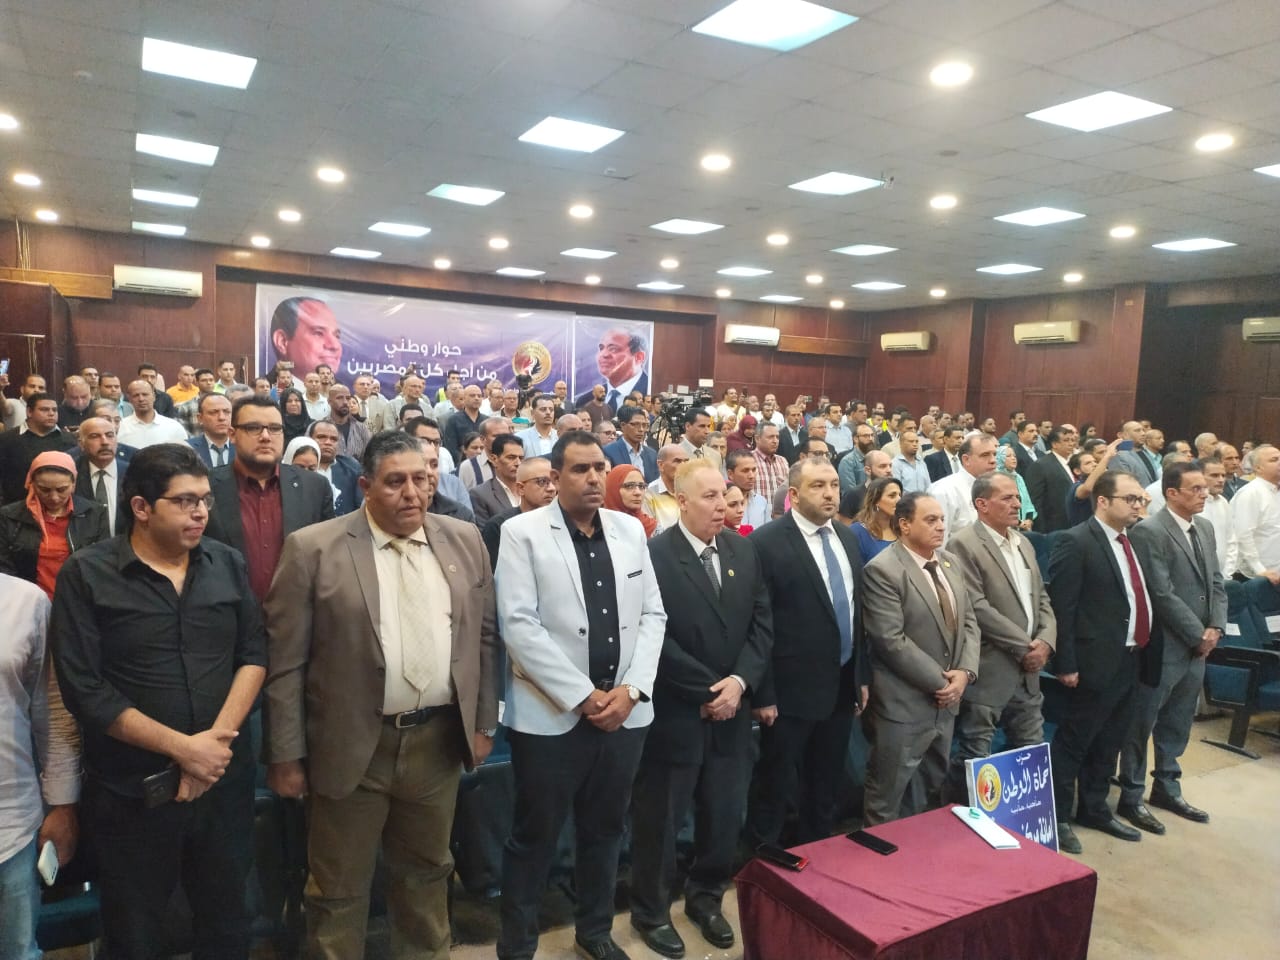 حزب حماة الوطن بالقليوبية ينظم حوار وطني بعنوان من أجل كل المصريين  (1)